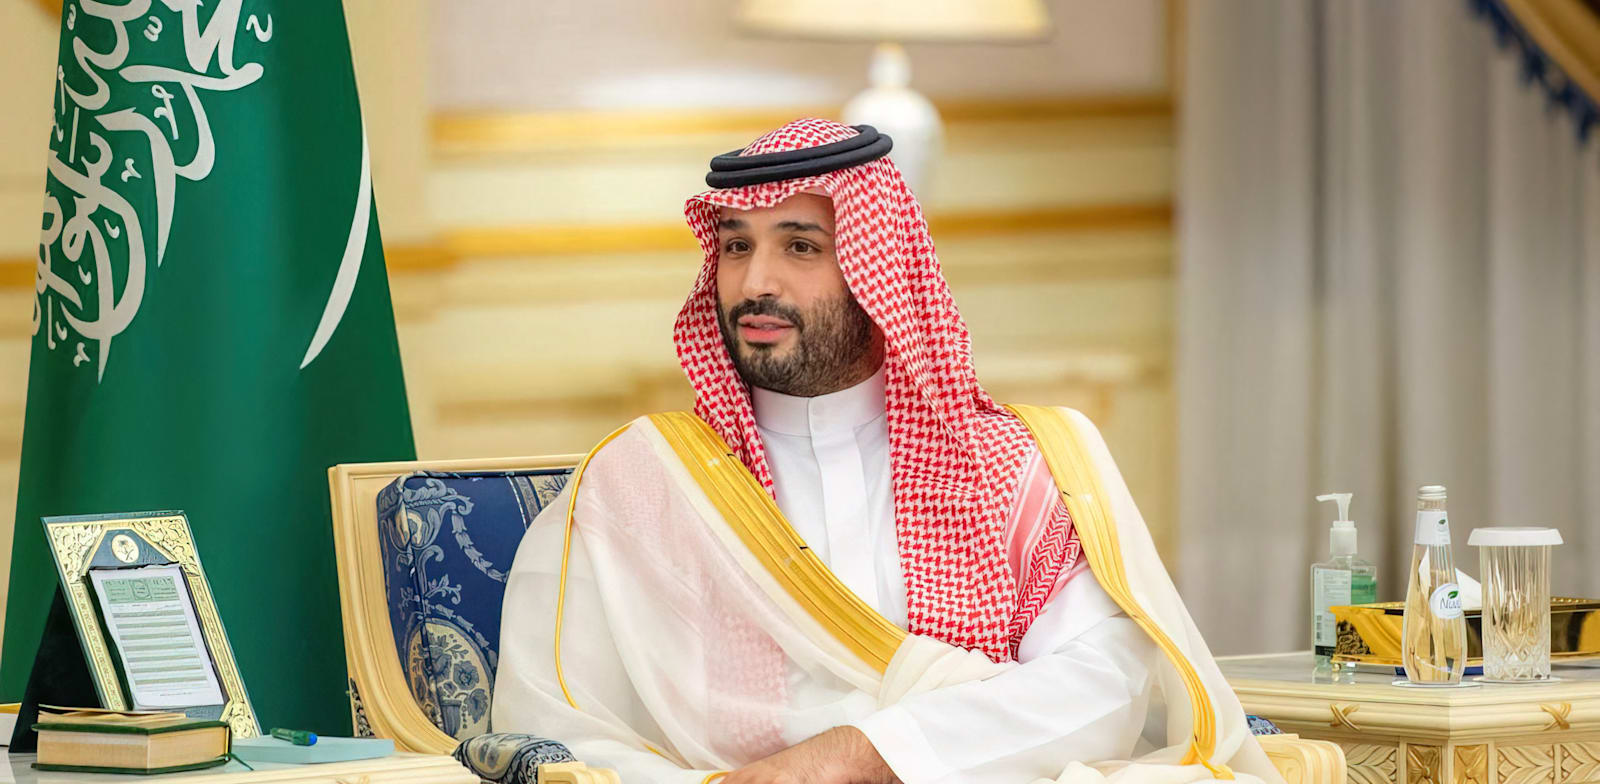 נסיך הכתר הסעודי, מוחמד בן סלמאן / צילום: Reuters, Balkis Press/ABACA